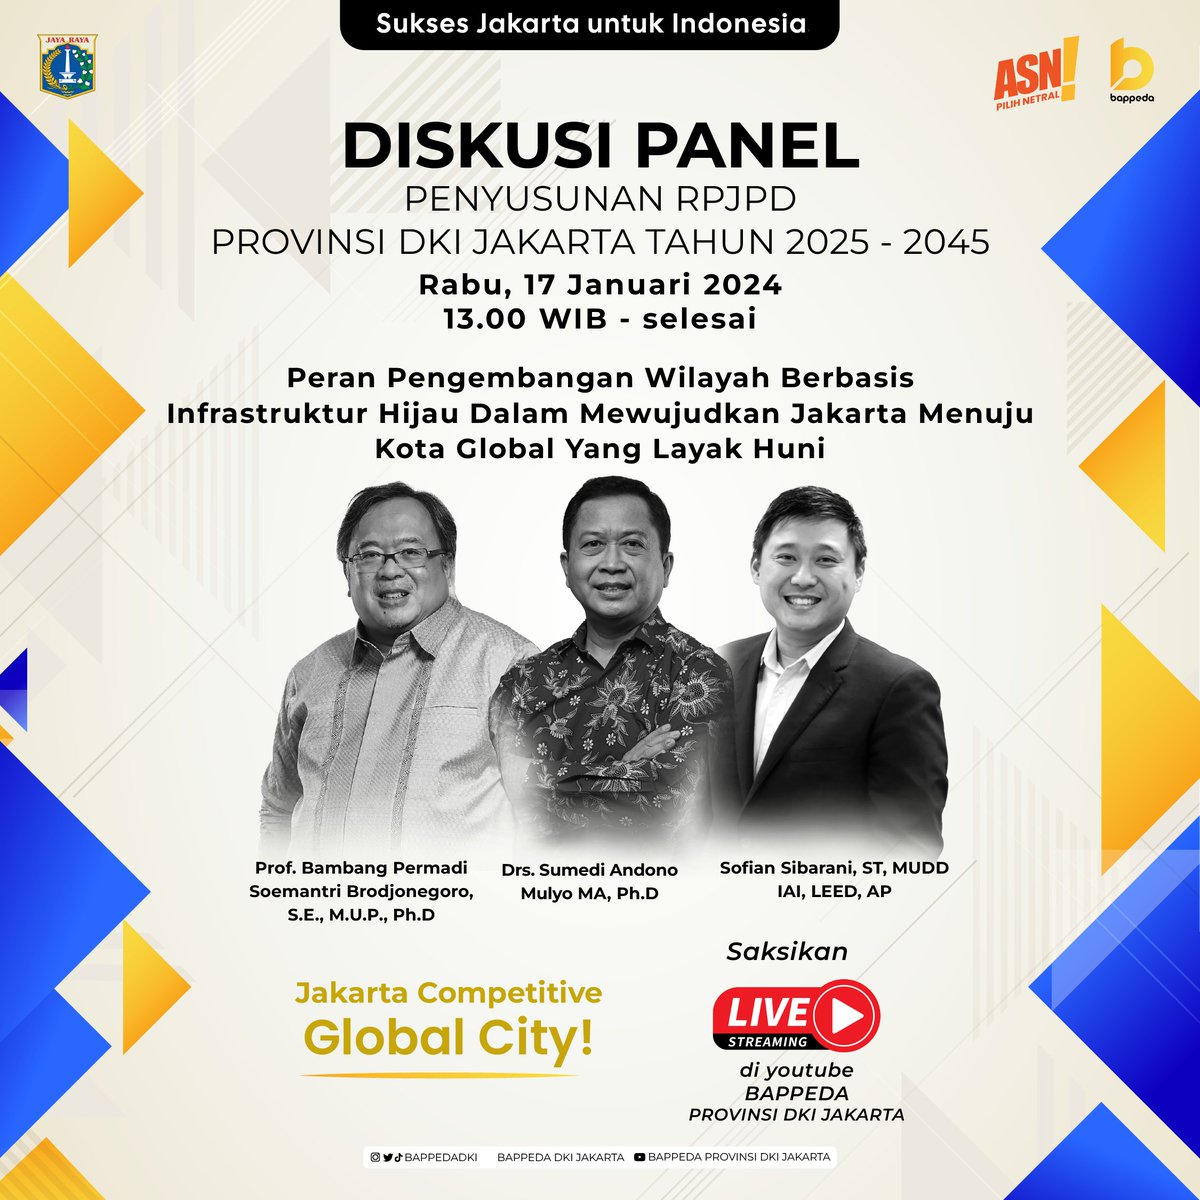 Sobat Bappeda mari wujudkan mimpi bersama, Jakarta sebagai Global City 20 tahun kedepan dalam Diskusi Panel Penyusunan RPJPD Provinsi DKI Jakarta Tahun 2025-2045.Sebuah panggung ide dan aspirasi dari para stake holder untuk membangun Jakarta yang lebih inklusif dan berkelanjutan.